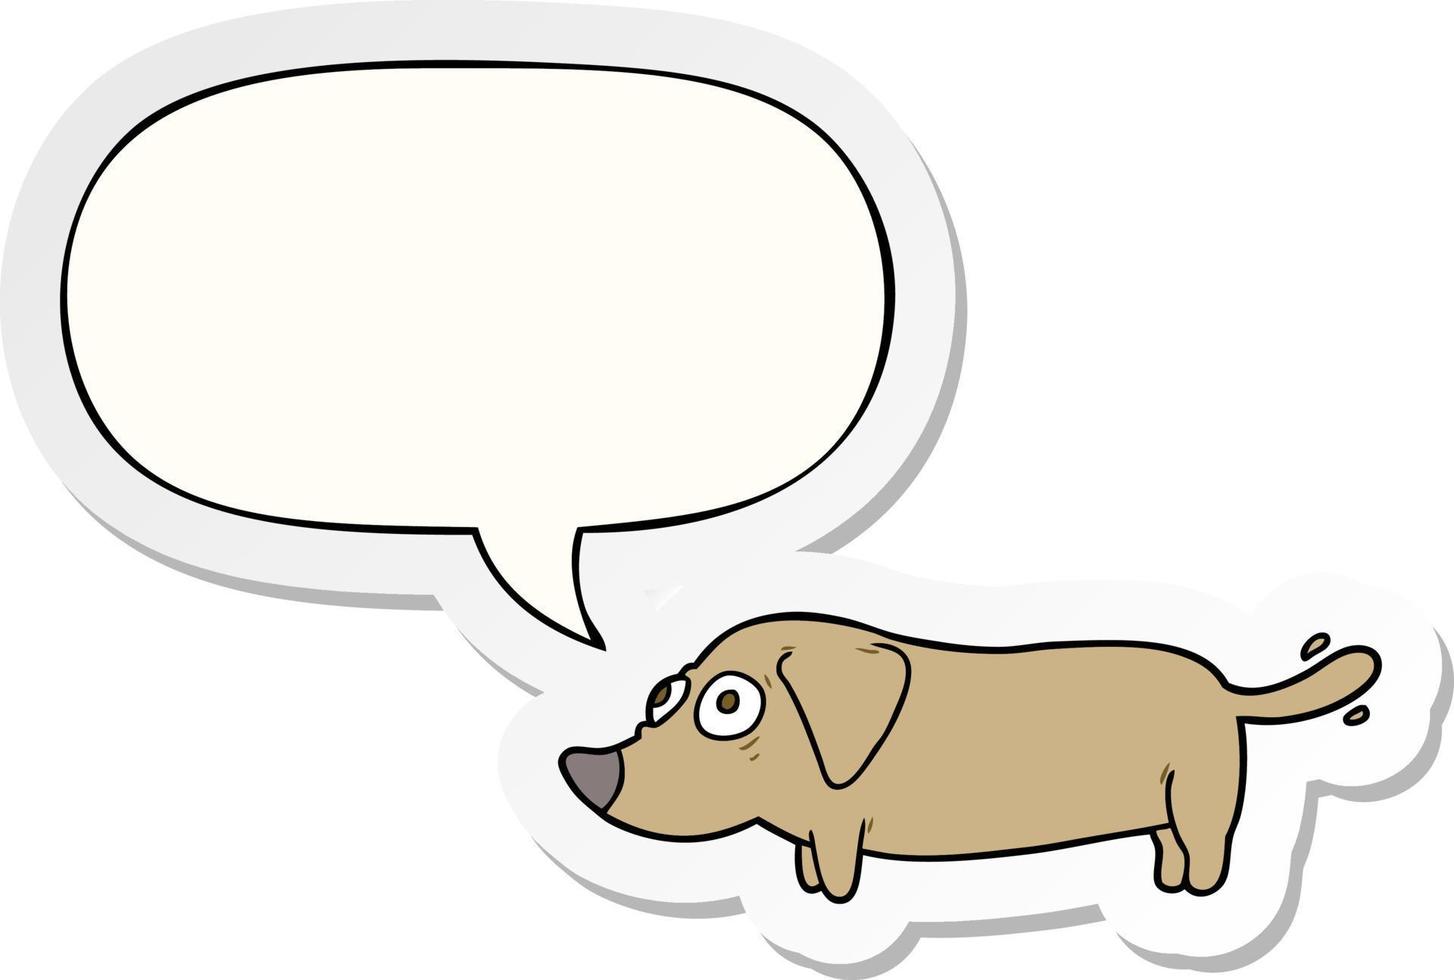 cartoon little dog and speech bubble sticker vector